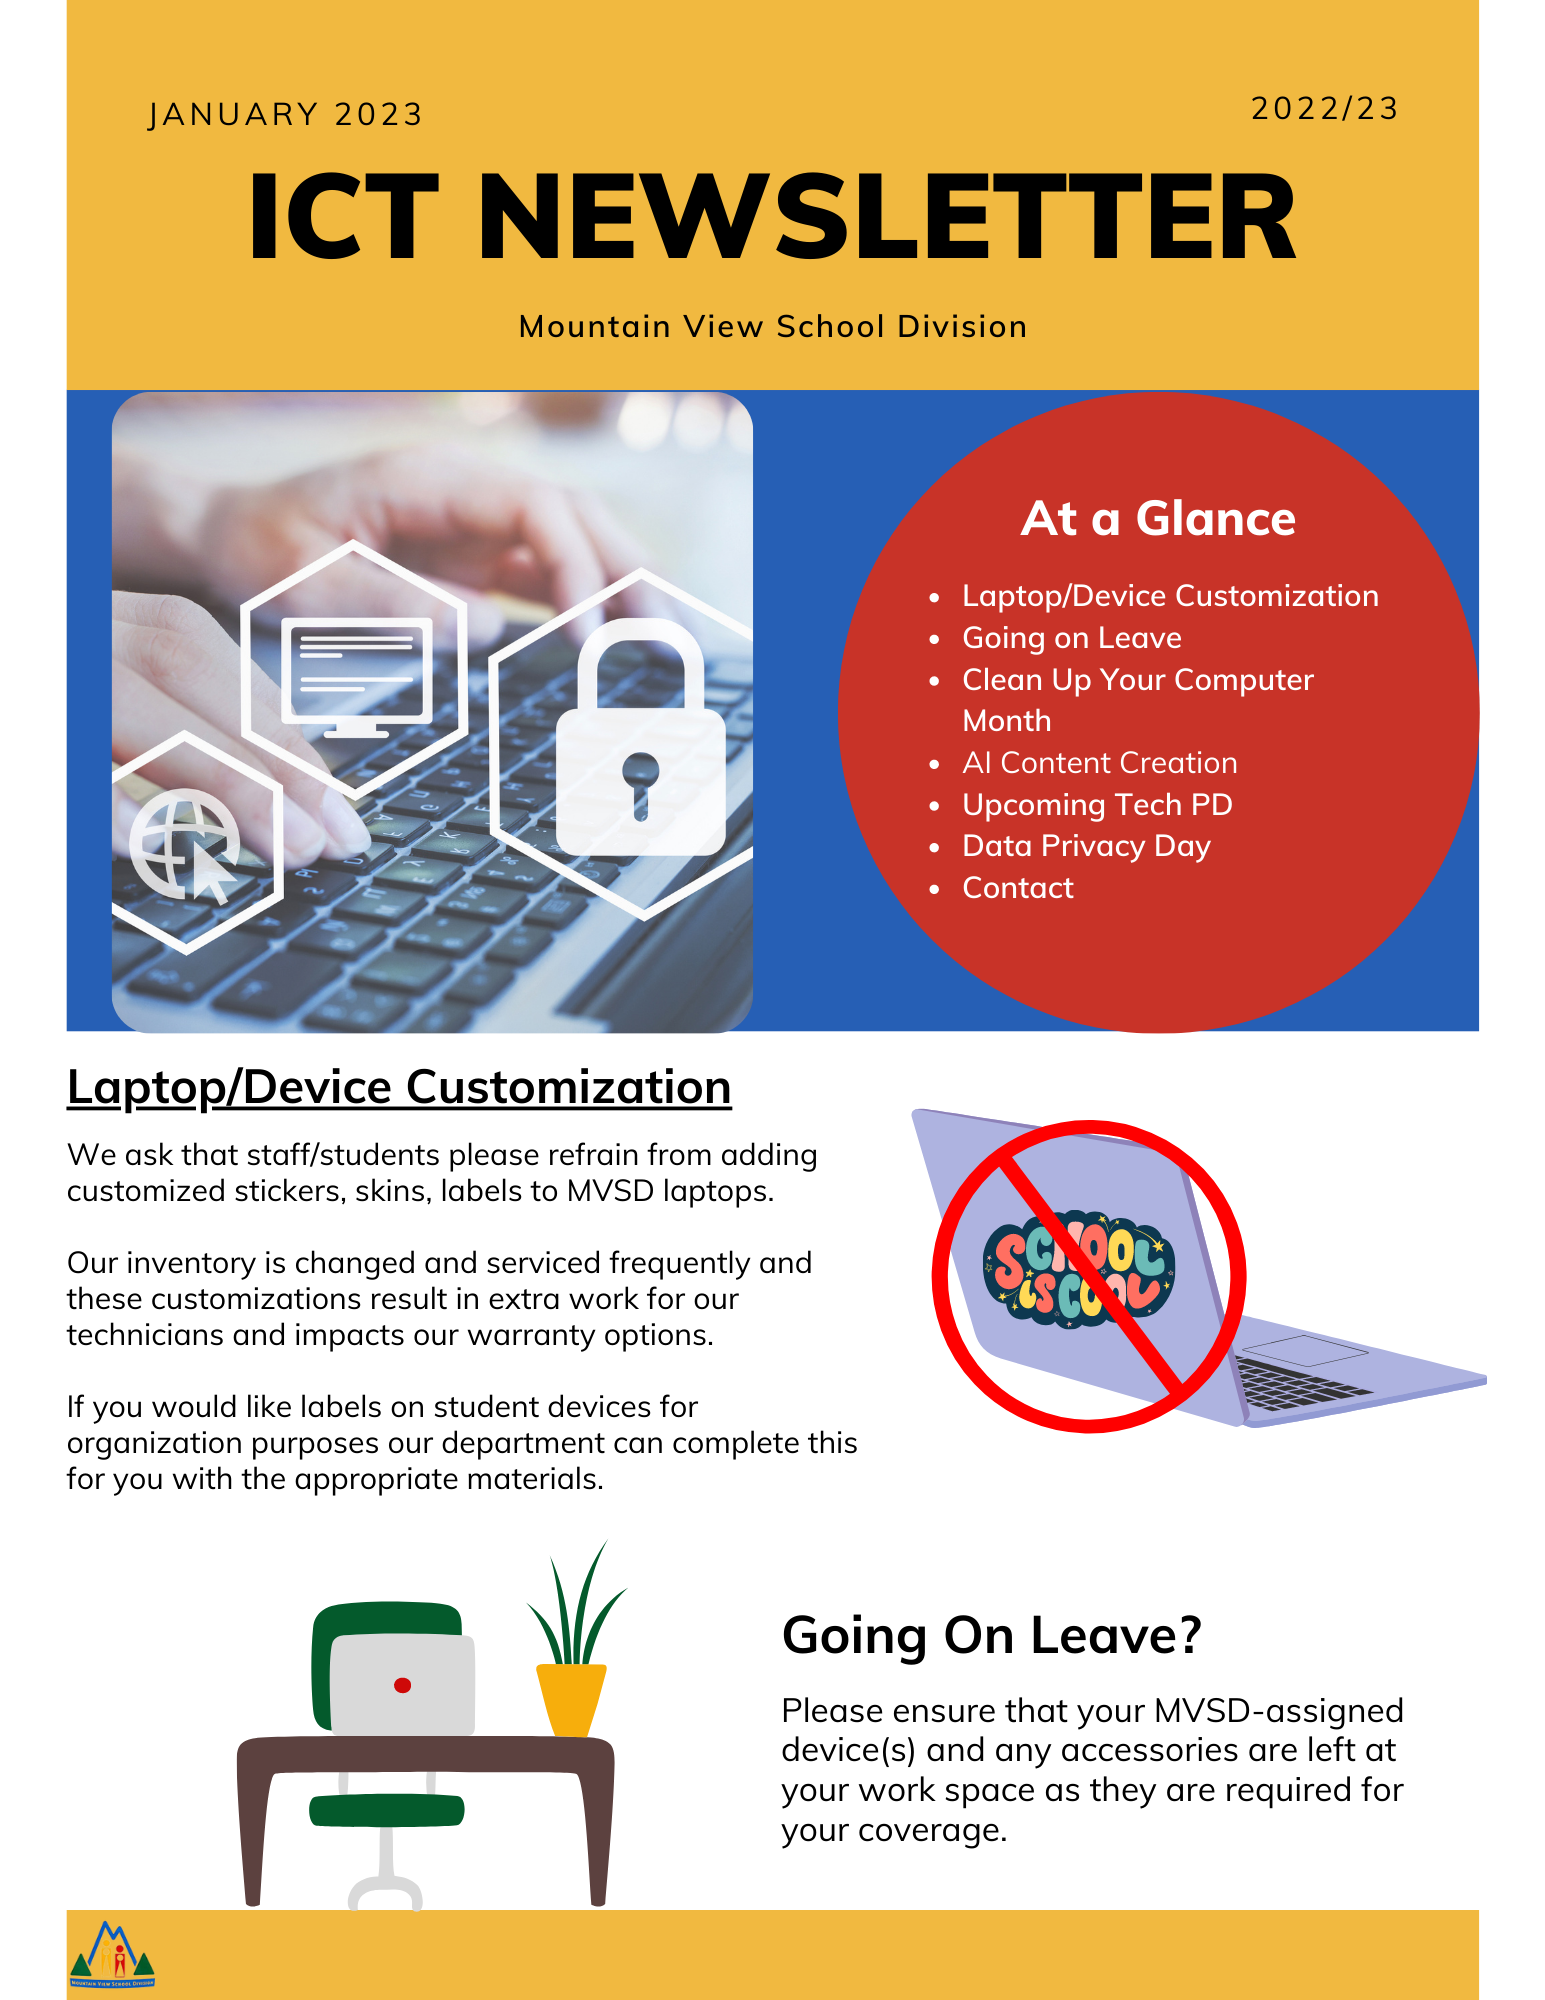 January ICT Newsletter